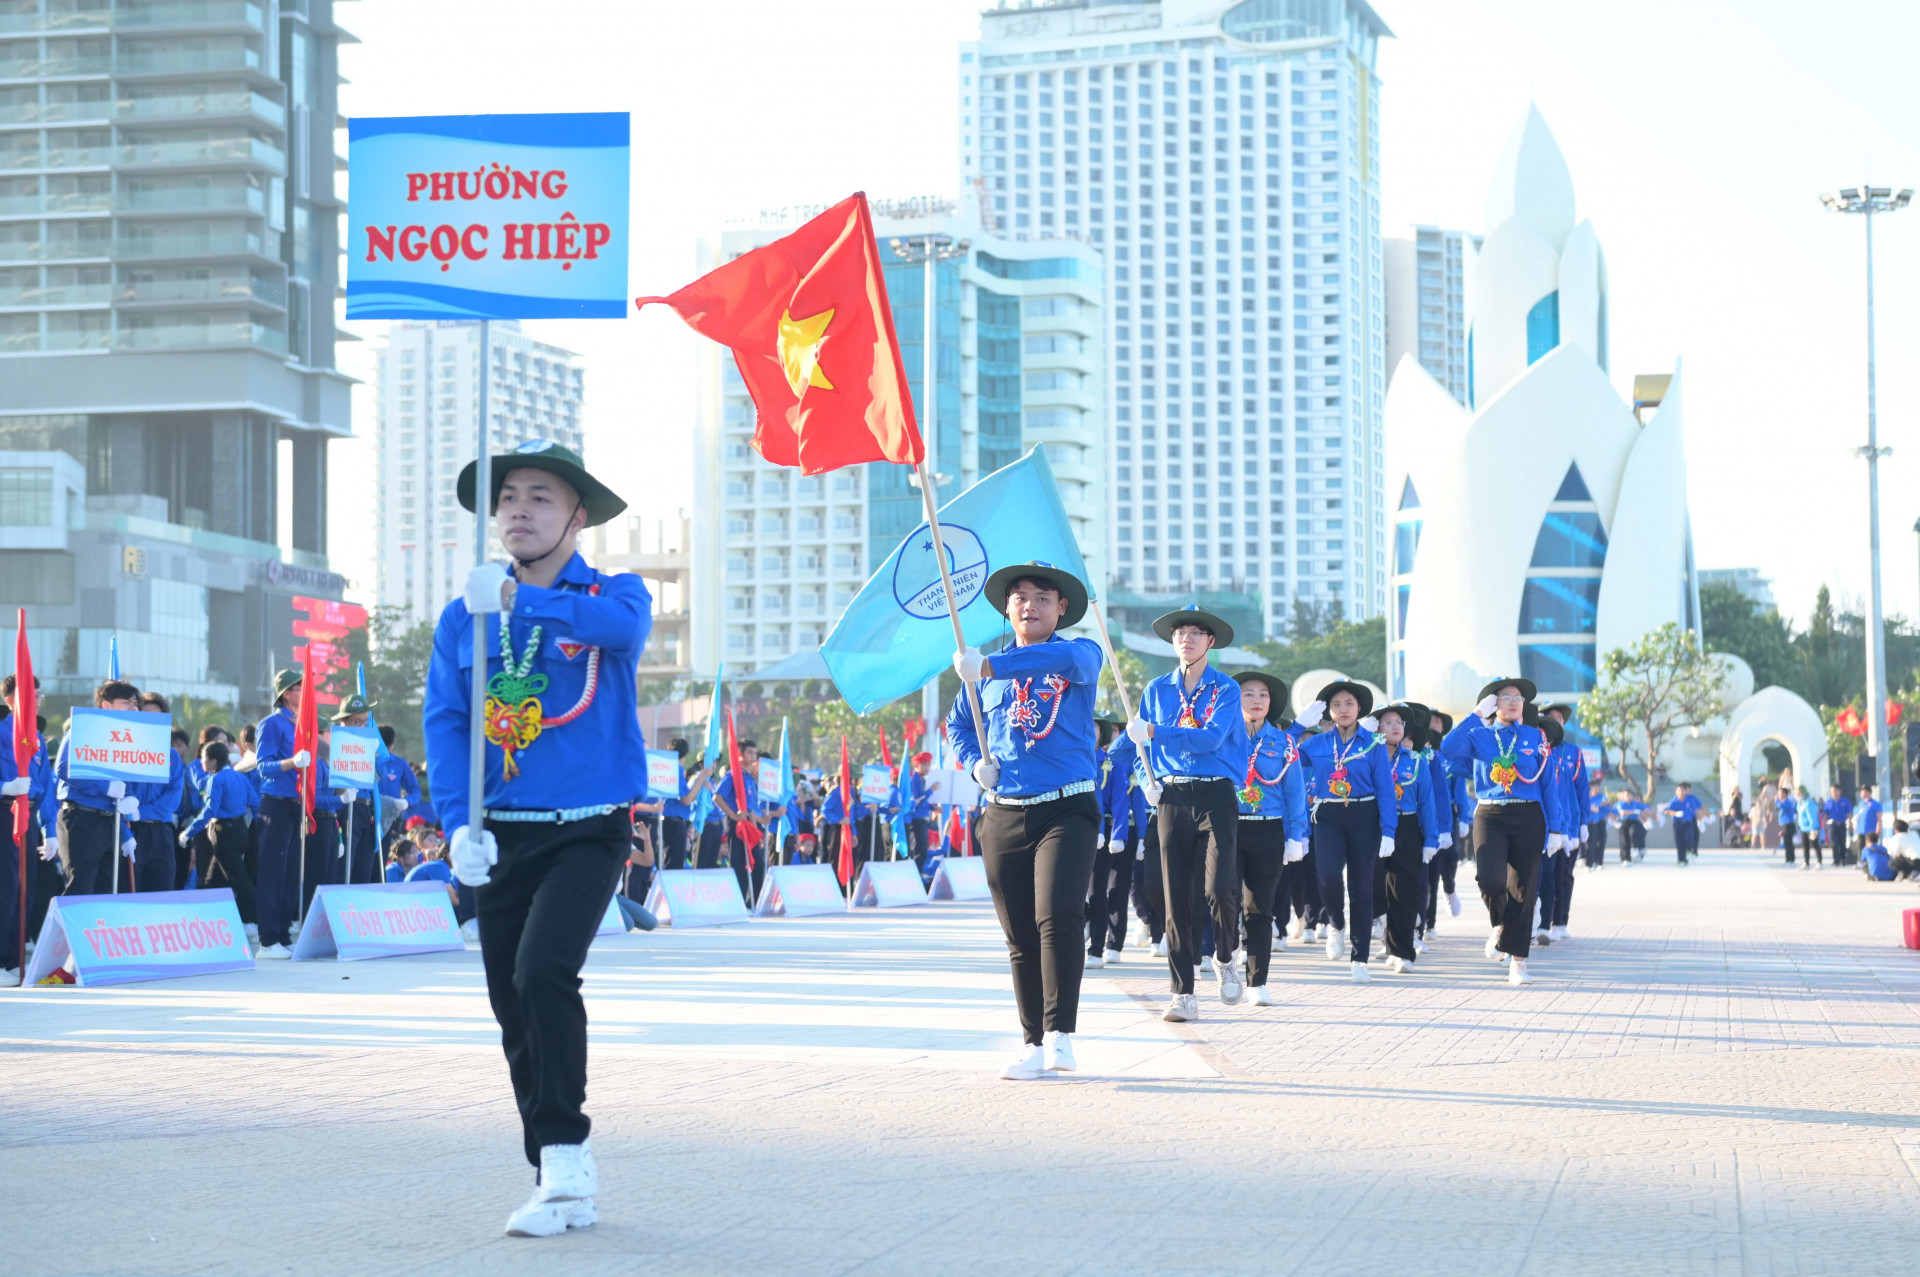 Thanh niên phường Ngọc Hiệp tham gia diễu hành.